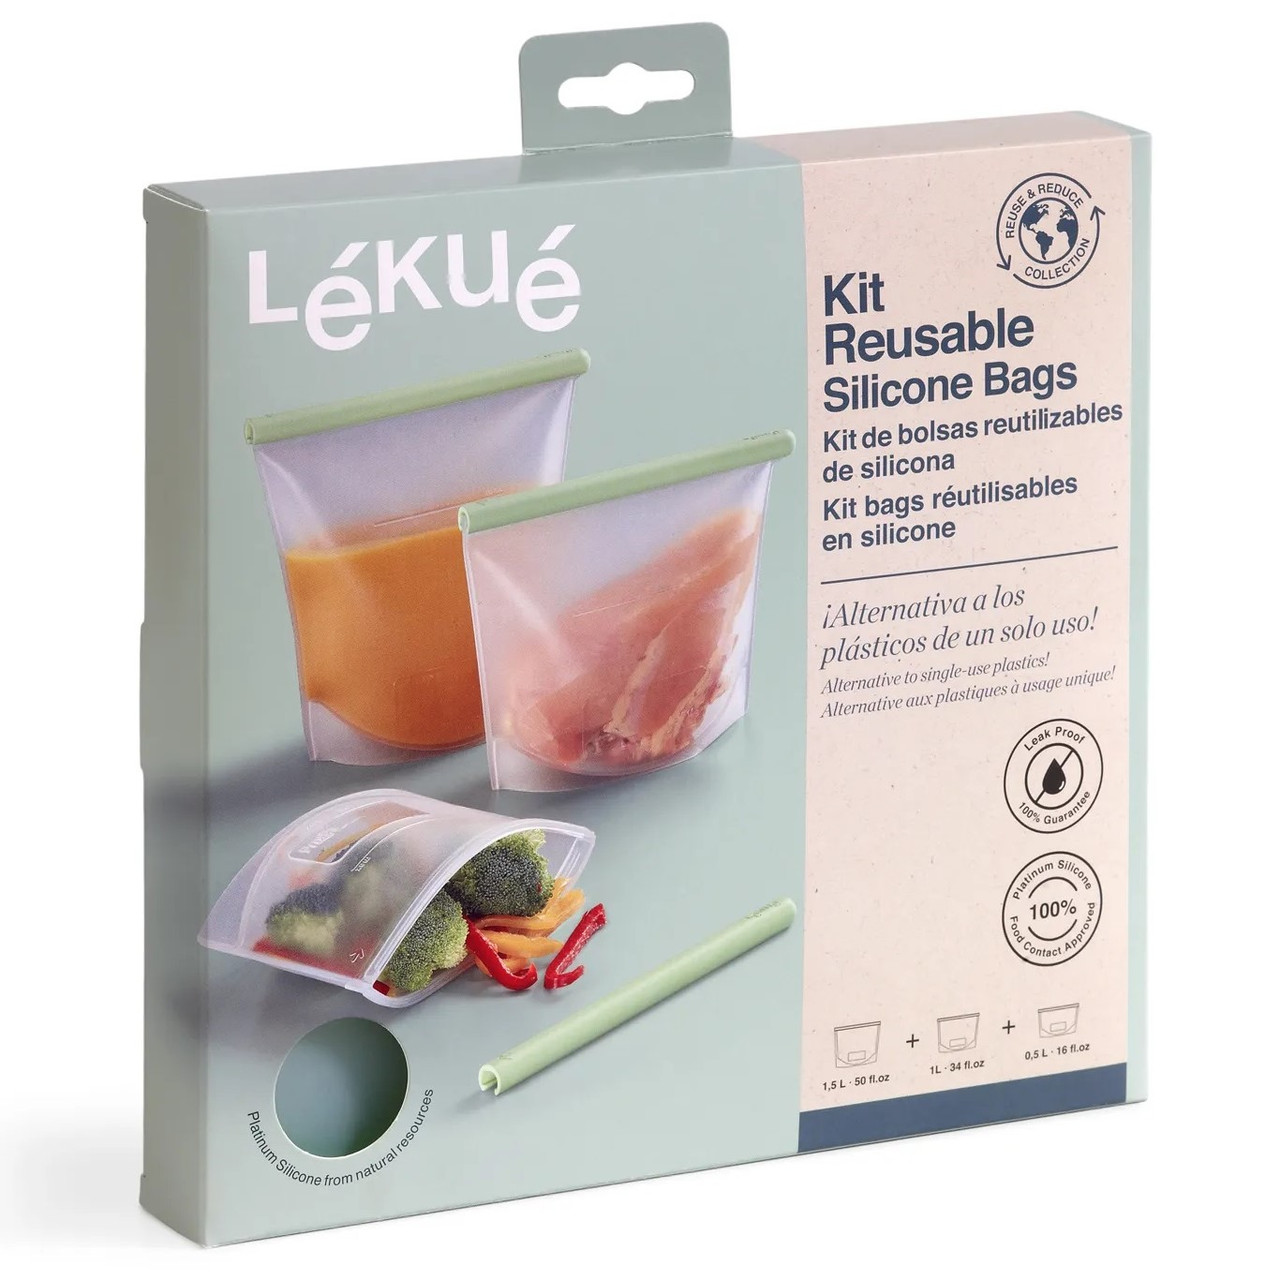 Lékué Reuse & Reduce Collection - Silicone Reusable Bag Set - 1.5L (6.35 c), 1L (4.25 c), 0.5L (2.15 c) (LK3400800SURU500)